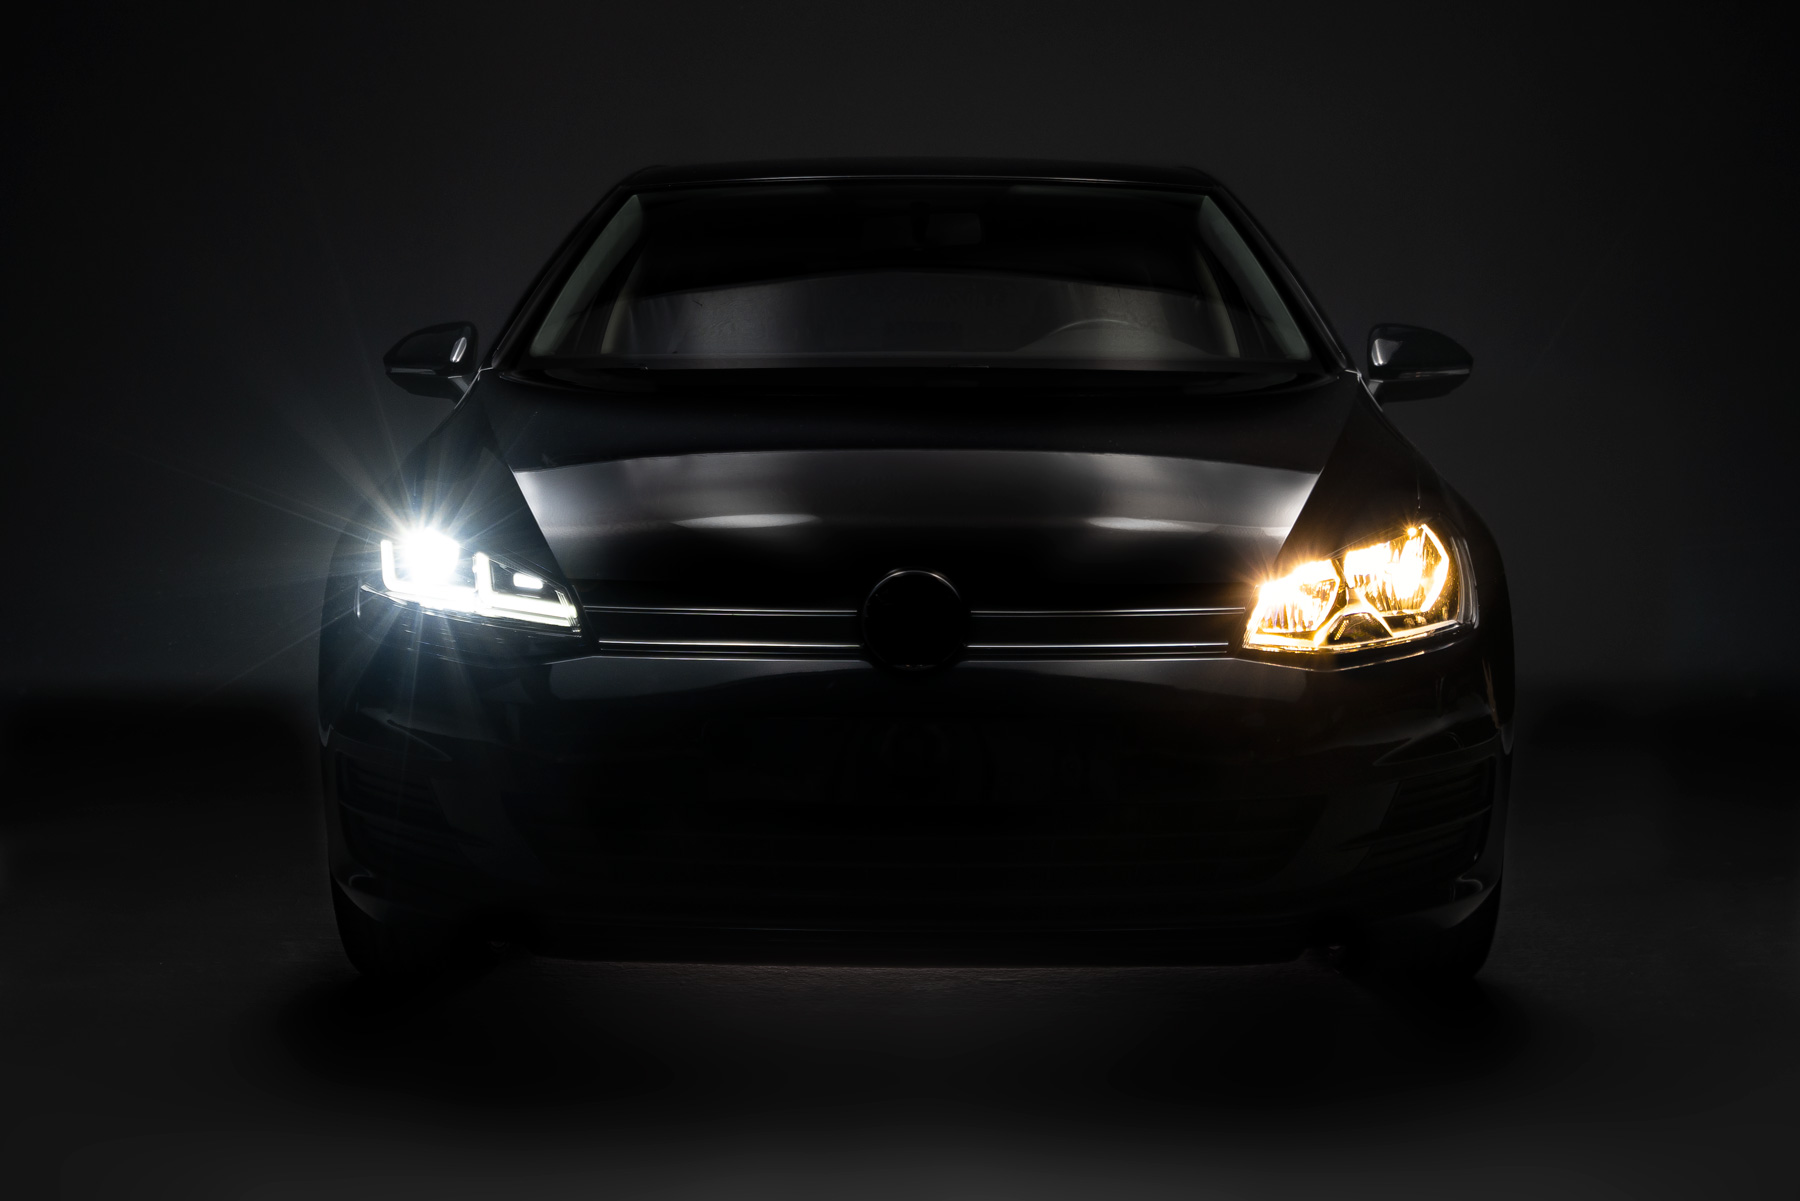 OSRAM LED-DRIVING VOLL-LED Tagfahrlicht Scheinwerfer für VW Golf VII  FACELIFT (7.5) 16-20 schwarz/rot